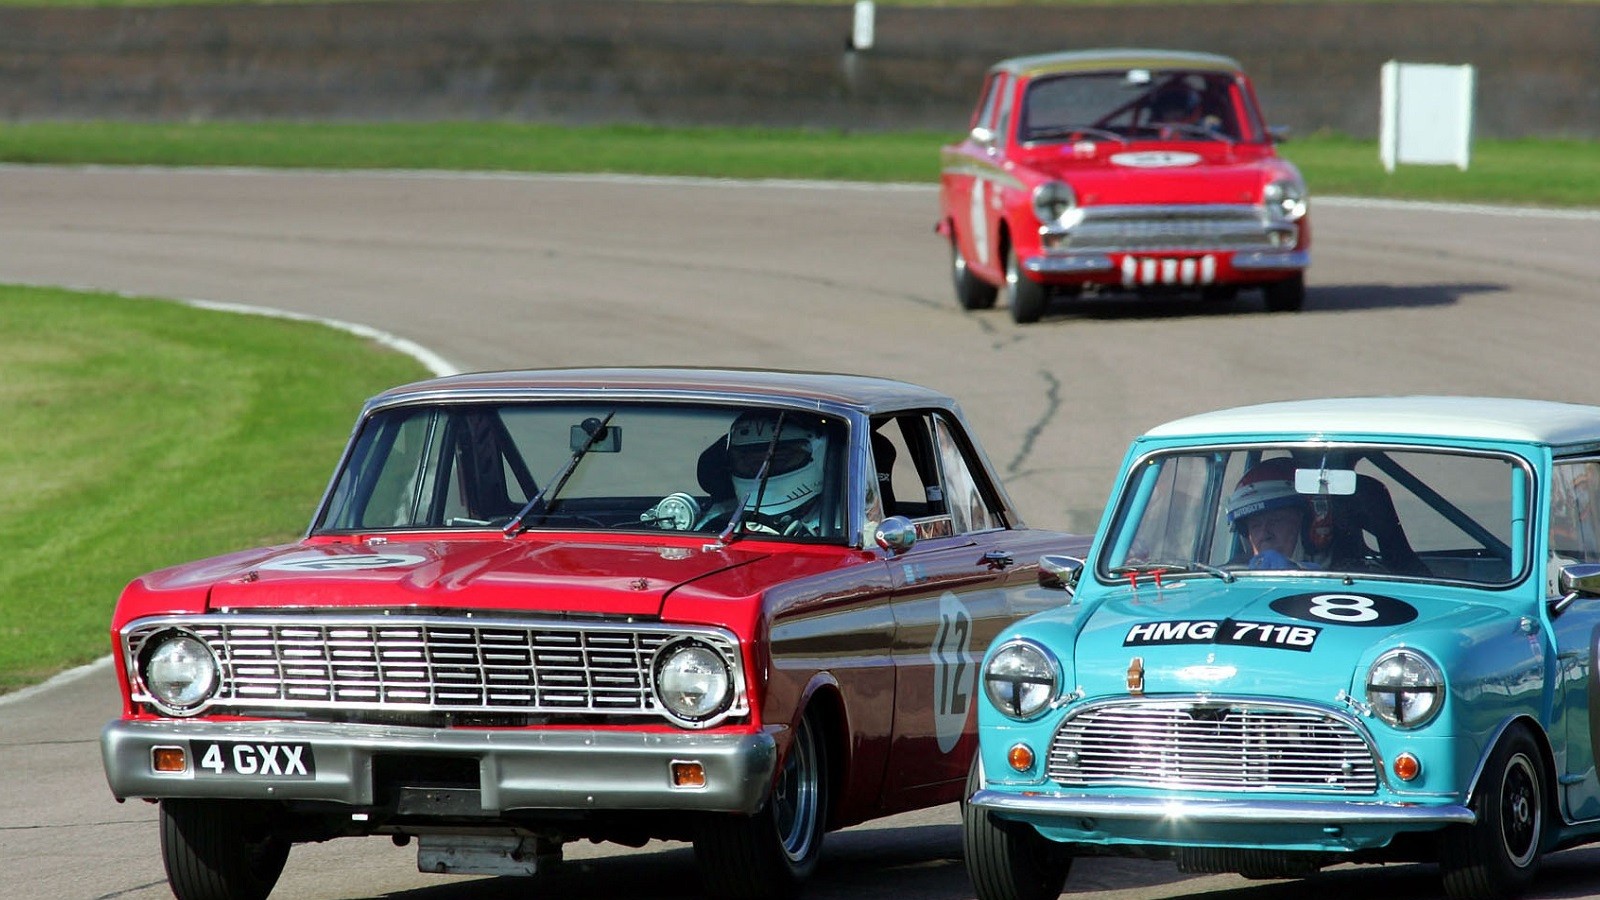 65 years of brilliant British touring cars